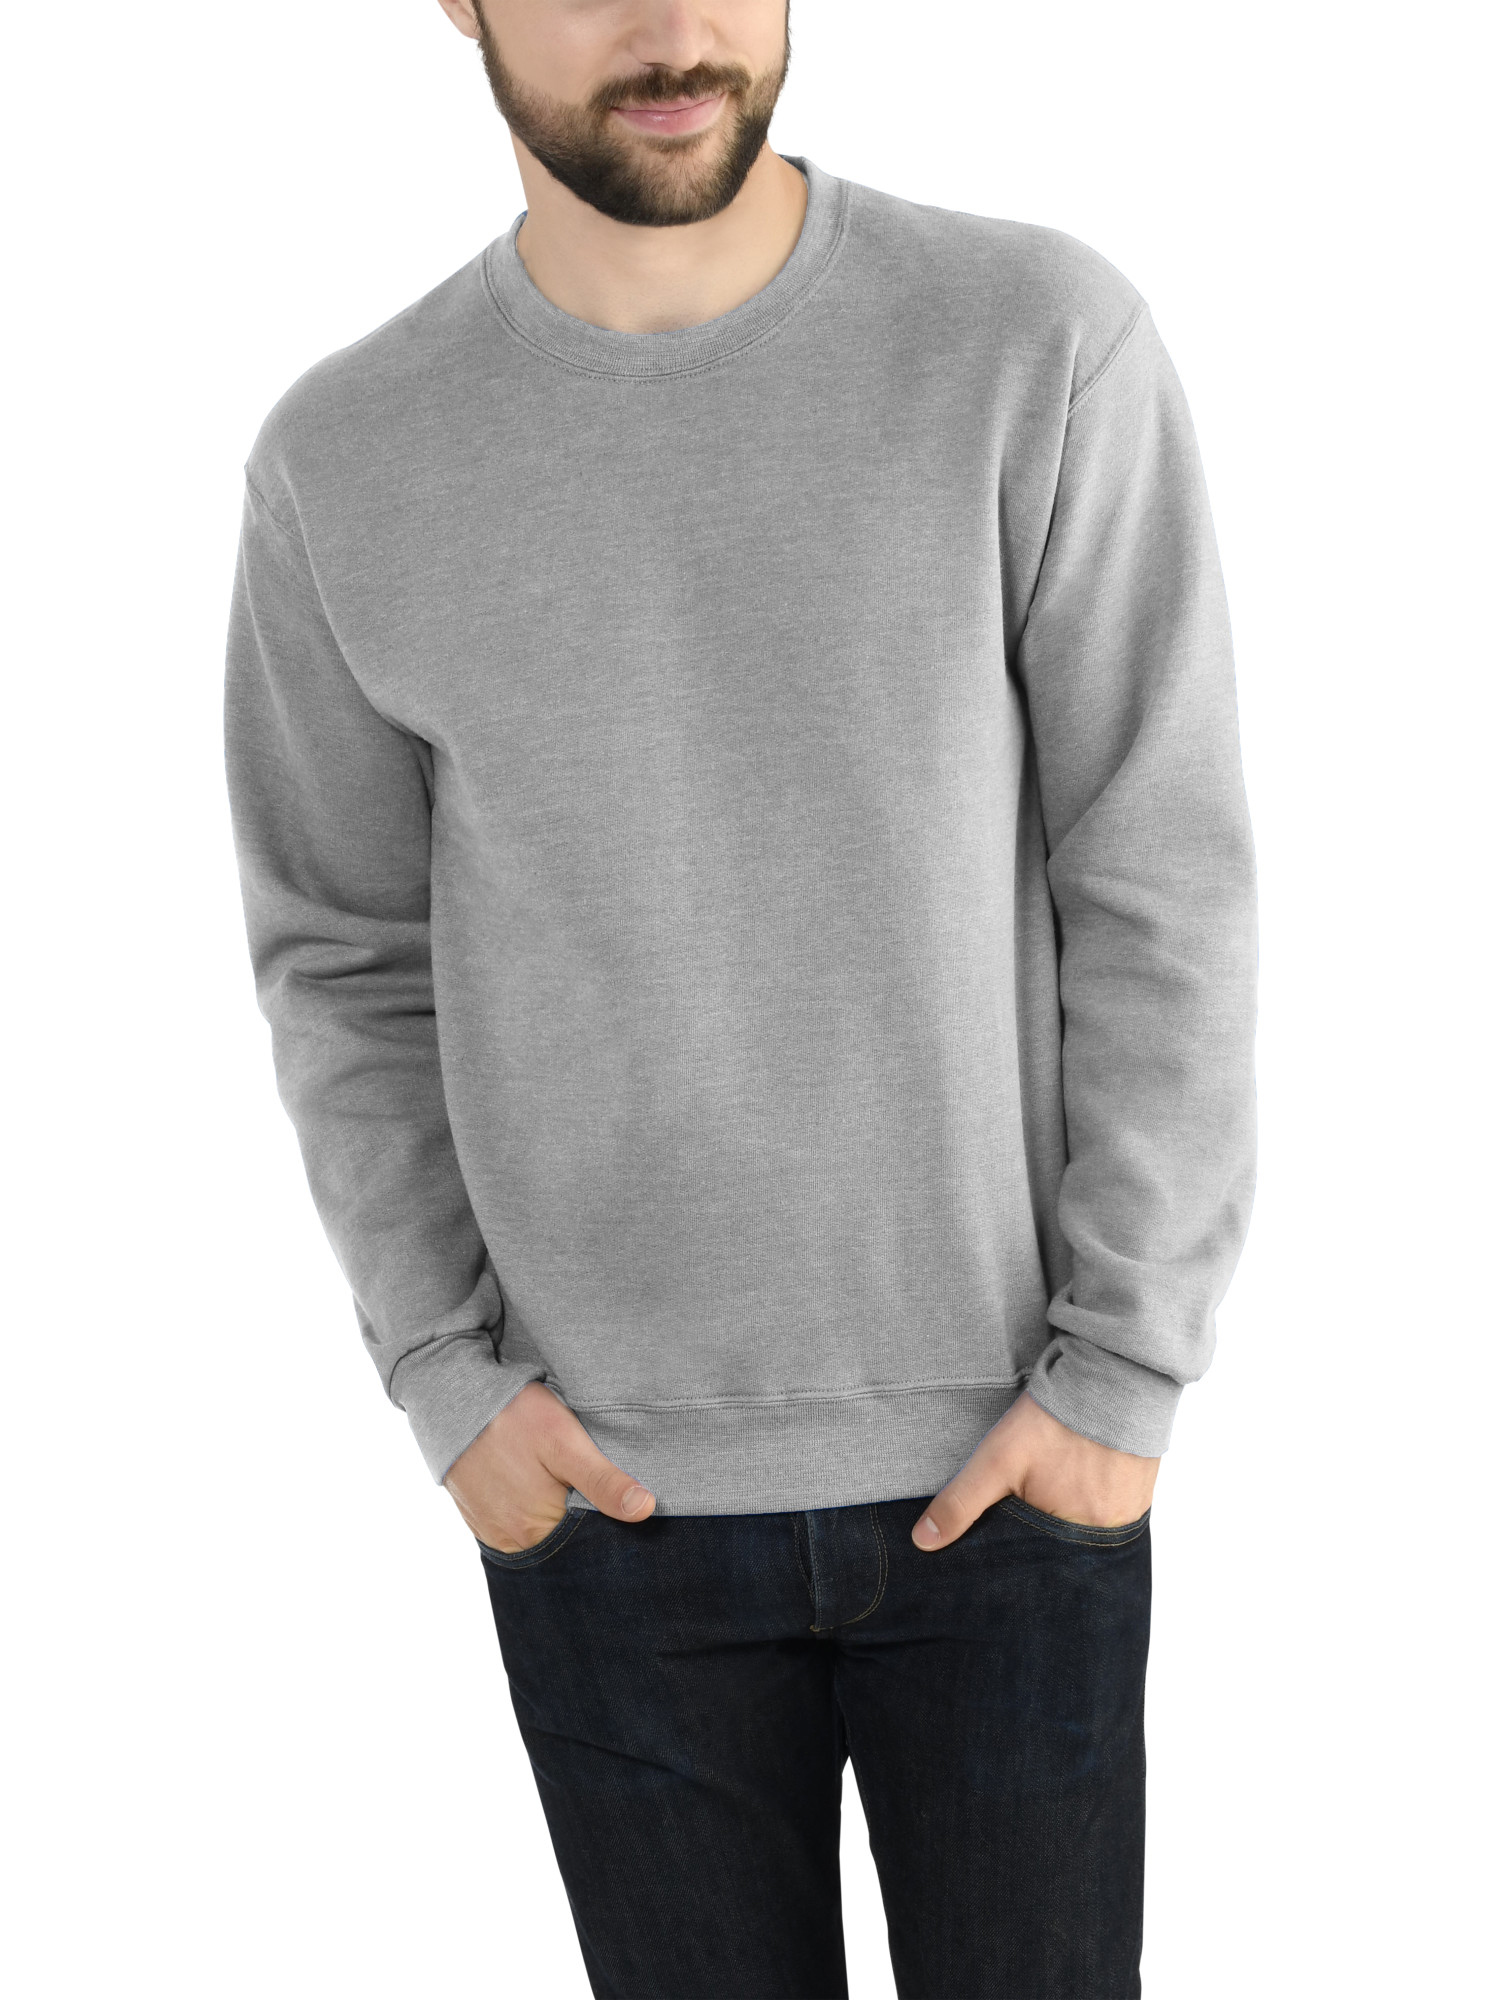 Everlast Men/'s Pullover Sweatshirt Jumper Sweater S M L XL 2XL 3XL 4XL New